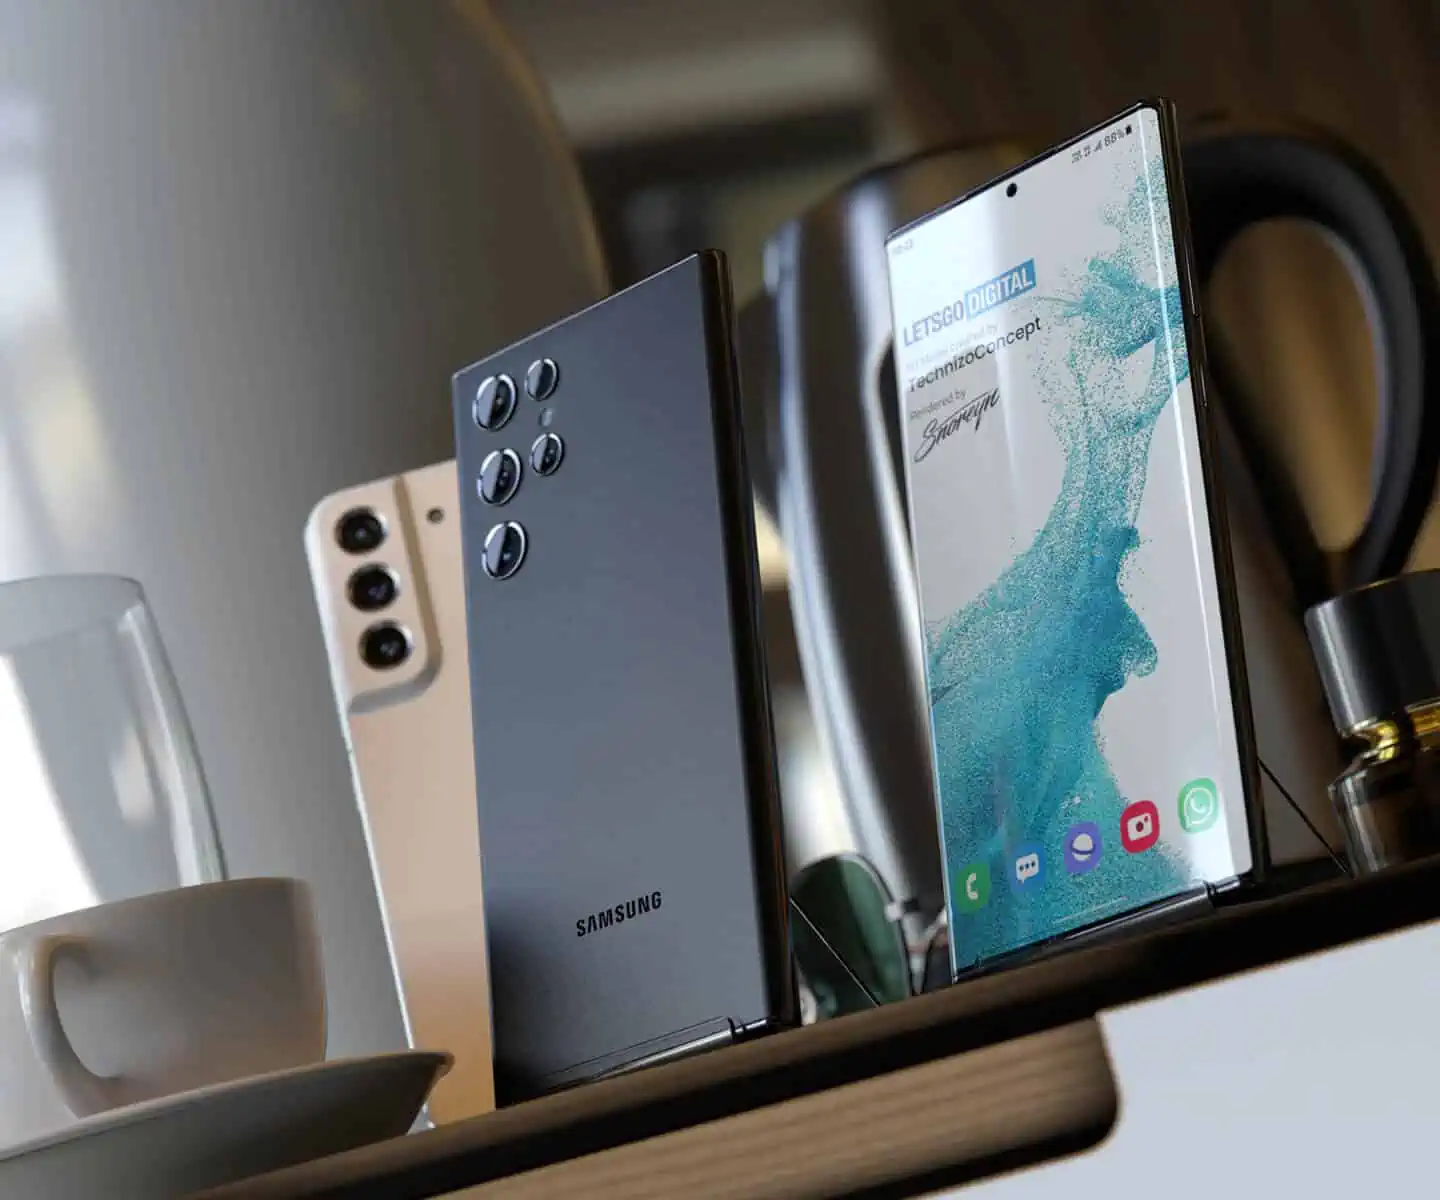 Samsung Galaxy S22: Cùng đón chờ sản phẩm mới của Samsung - Samsung Galaxy S22 với những tính năng cải tiến đáng mong đợi. Hãy cùng nhìn ngắm bộ đôi Samsung Galaxy S22 và S22+ với thiết kế đẹp mắt và vi xử lý mạnh mẽ, sẽ đem lại trải nghiệm sử dụng tốt hơn cho người dùng.